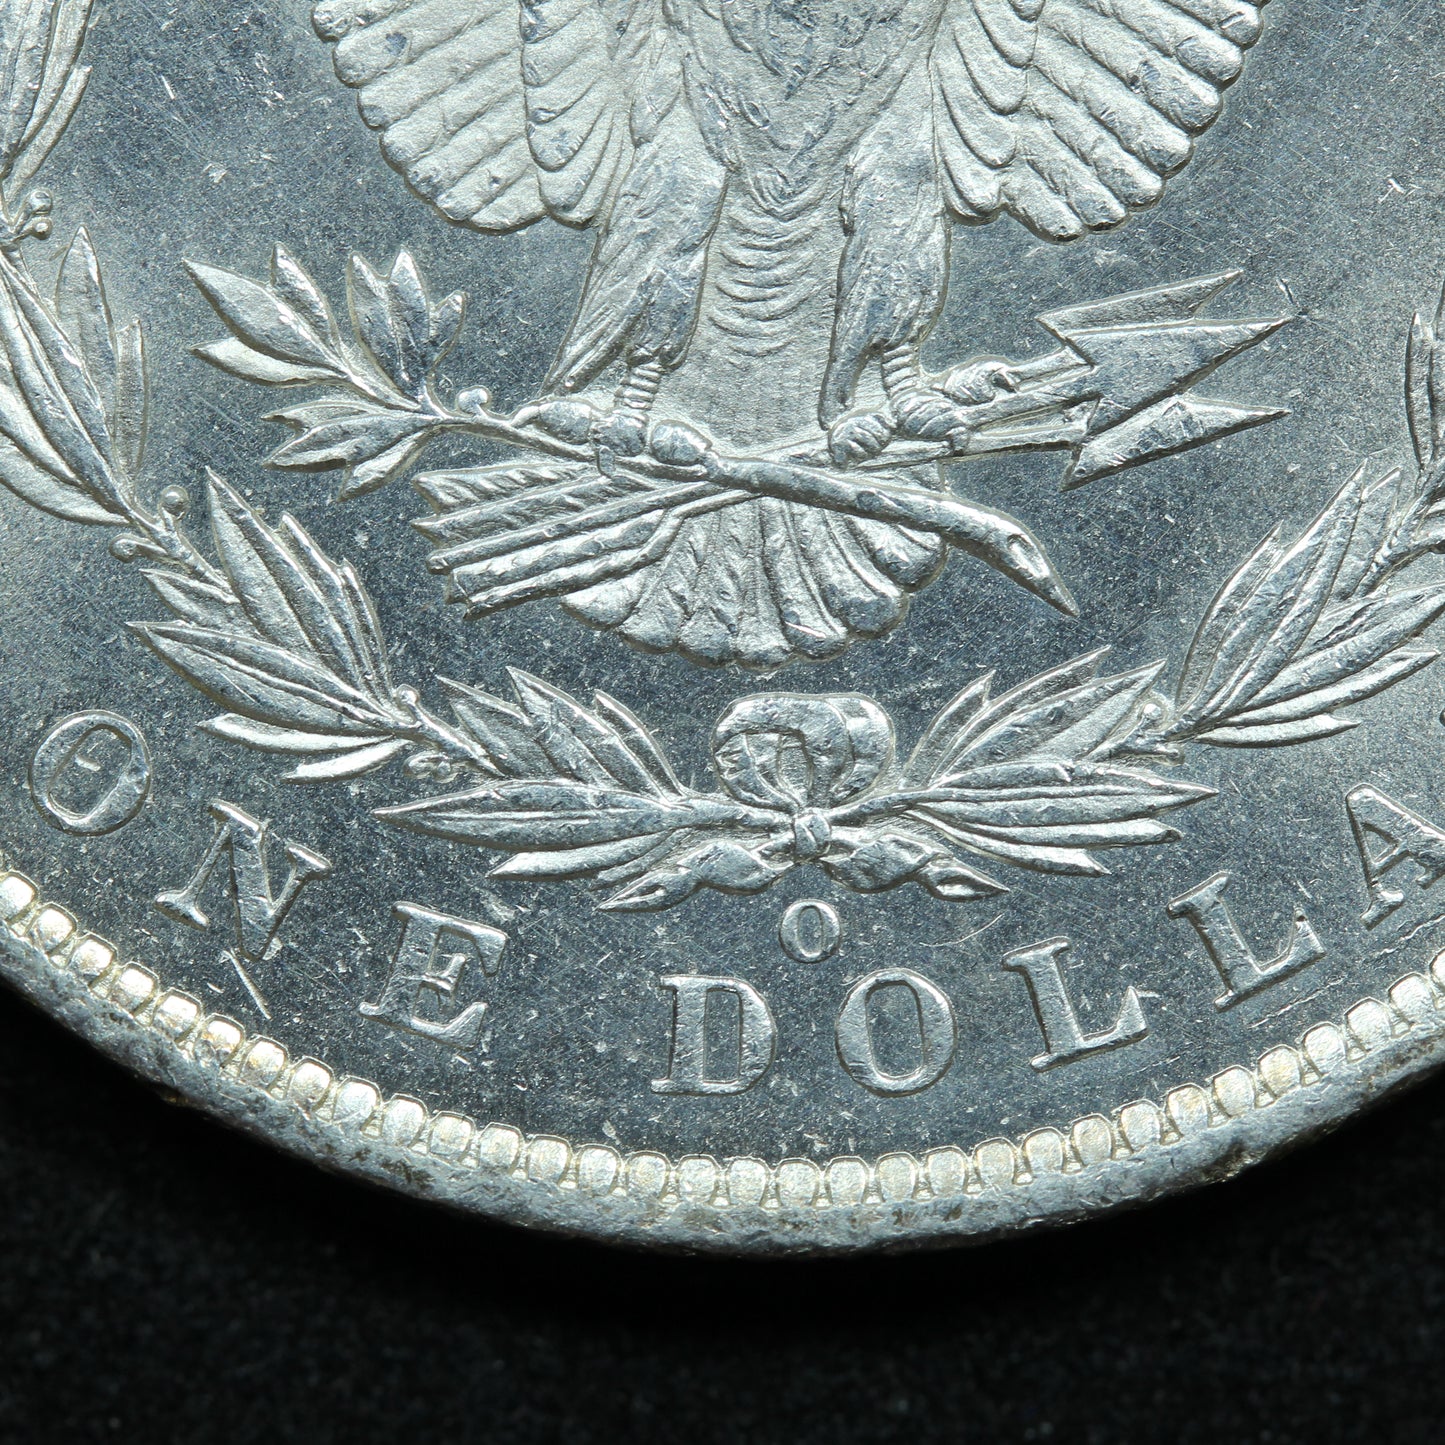 1885 O (New Orleans) Morgan Silver Dollar (#2)